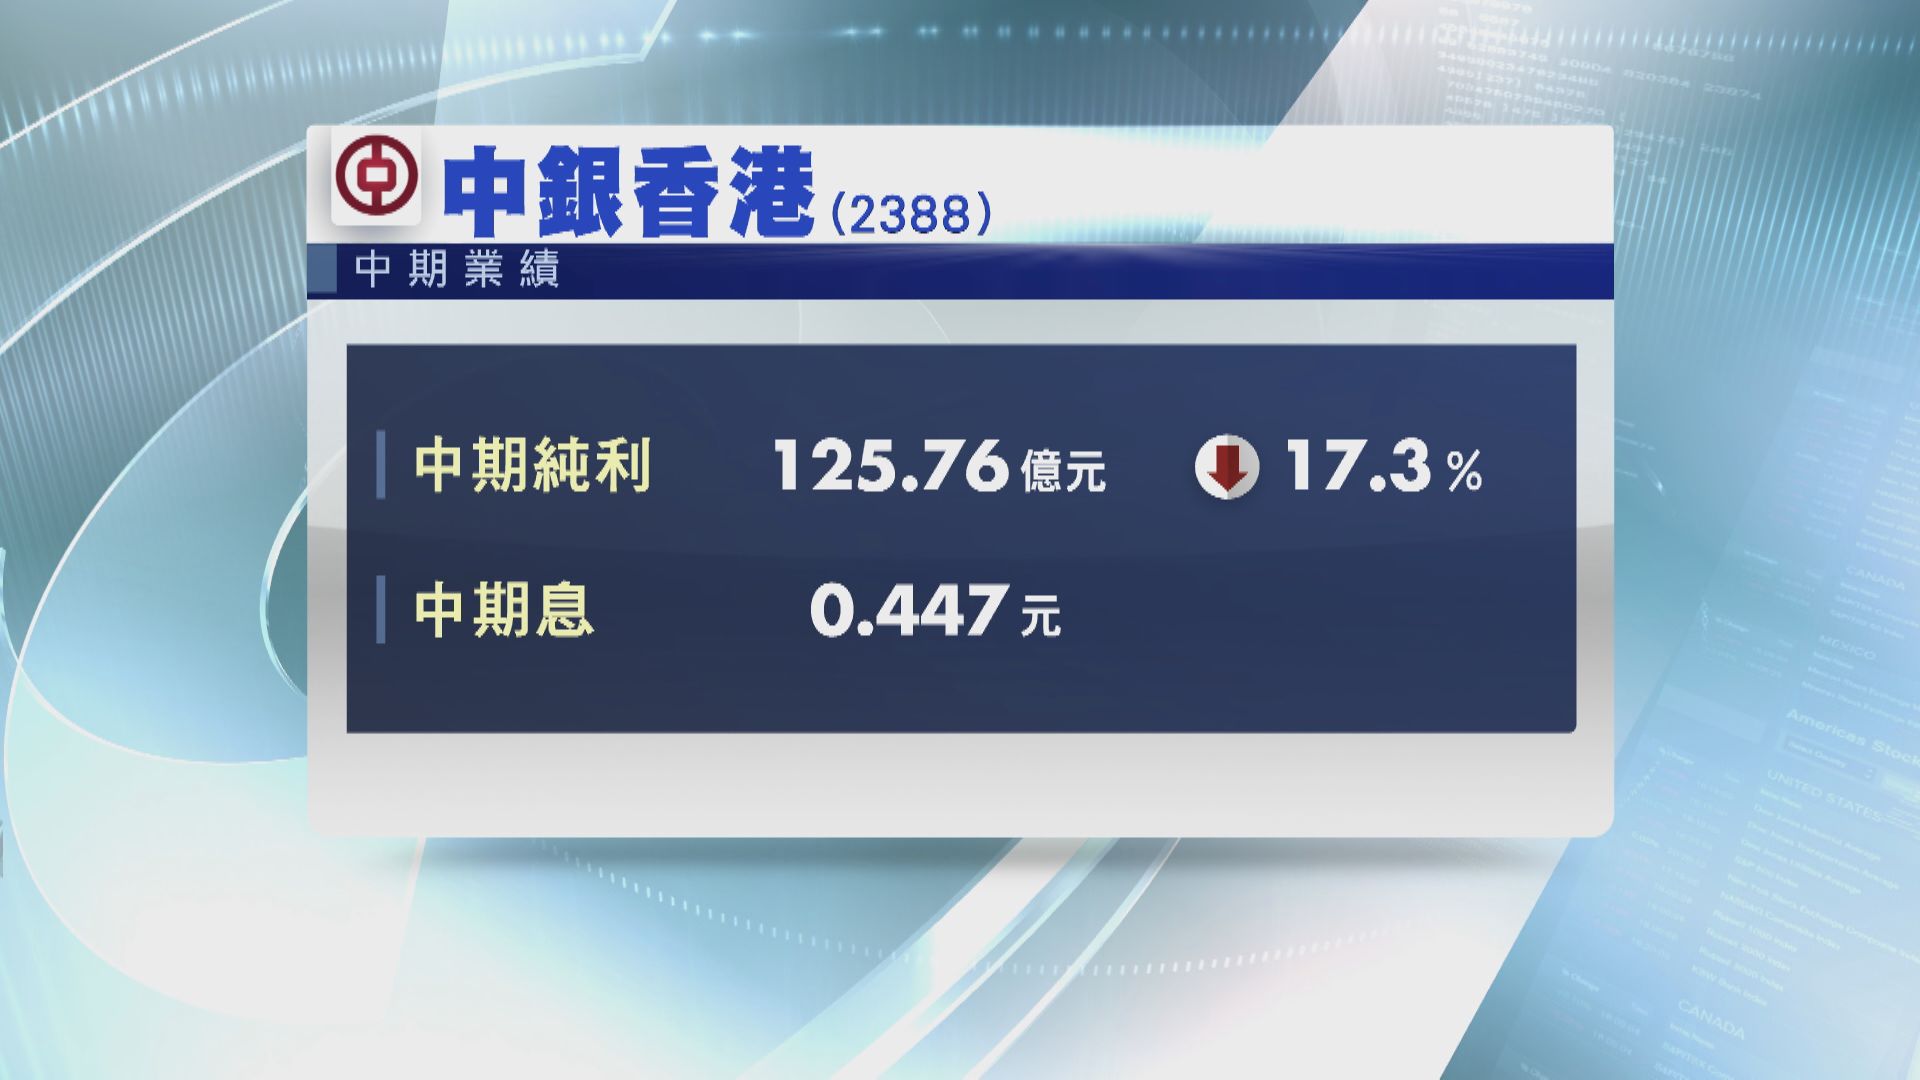 中銀香港純利倒退17% 息44.7仙